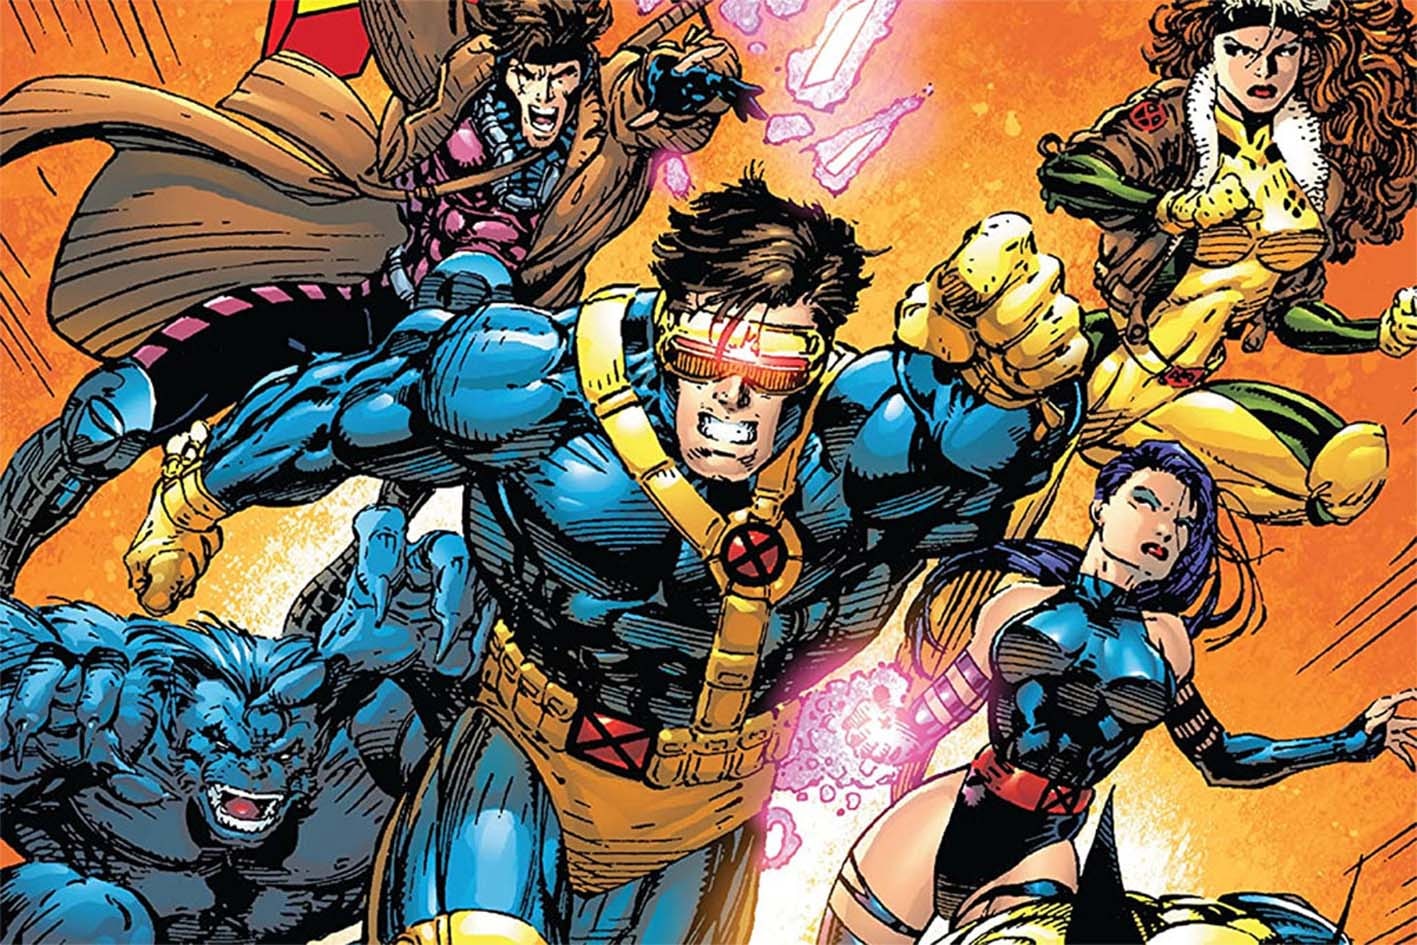 消息指 Marvel 已啟動新版《X-MEN》電影相關计划